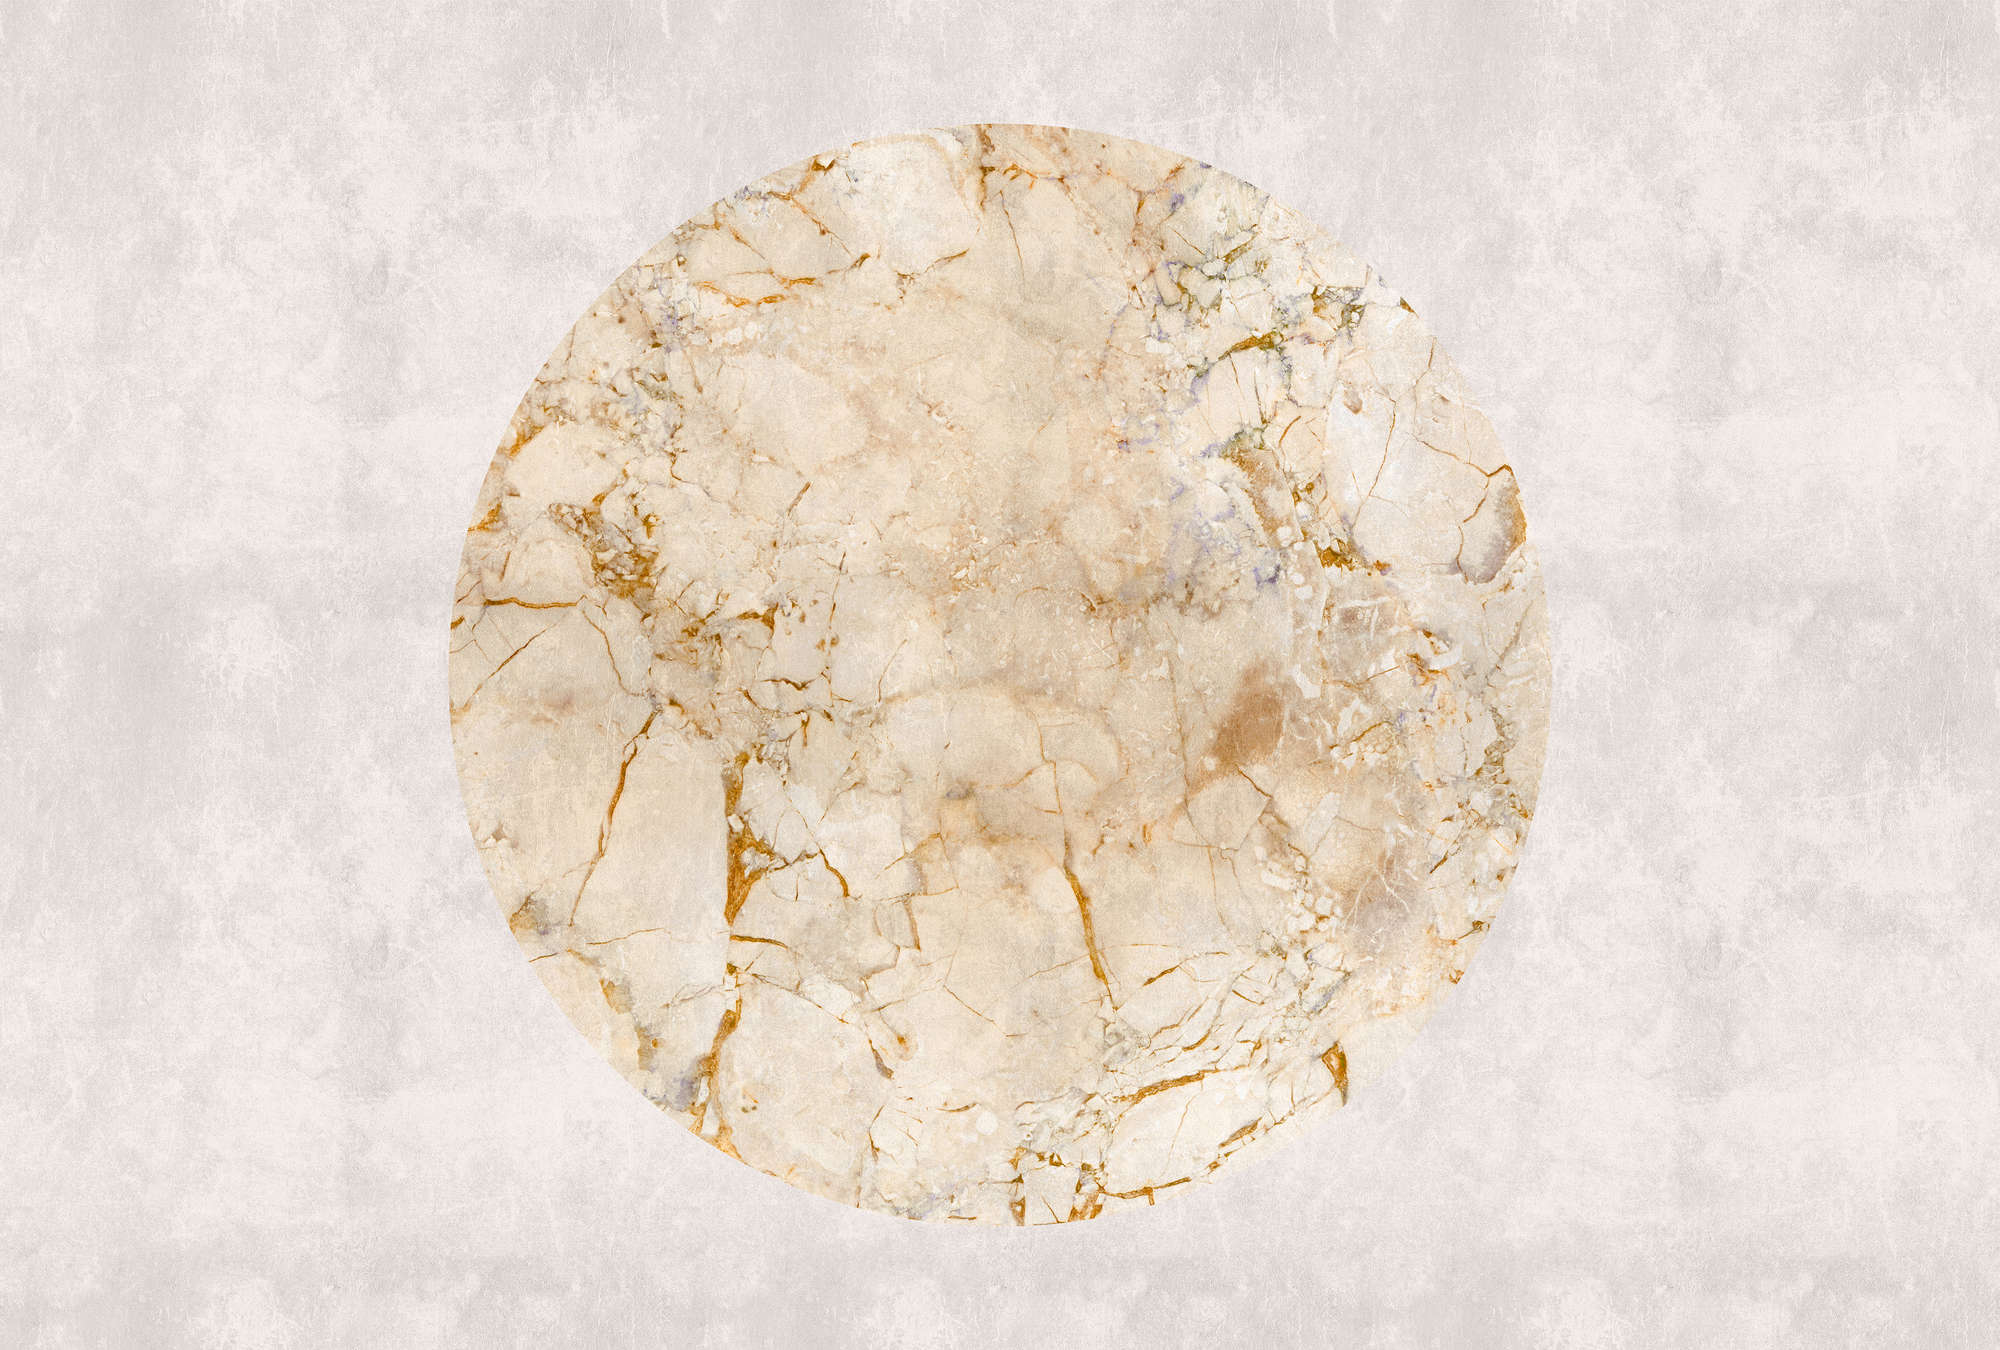             Venus 2 - Papel Pintado de Mármol con diseño dorado y aspecto de piedra
        